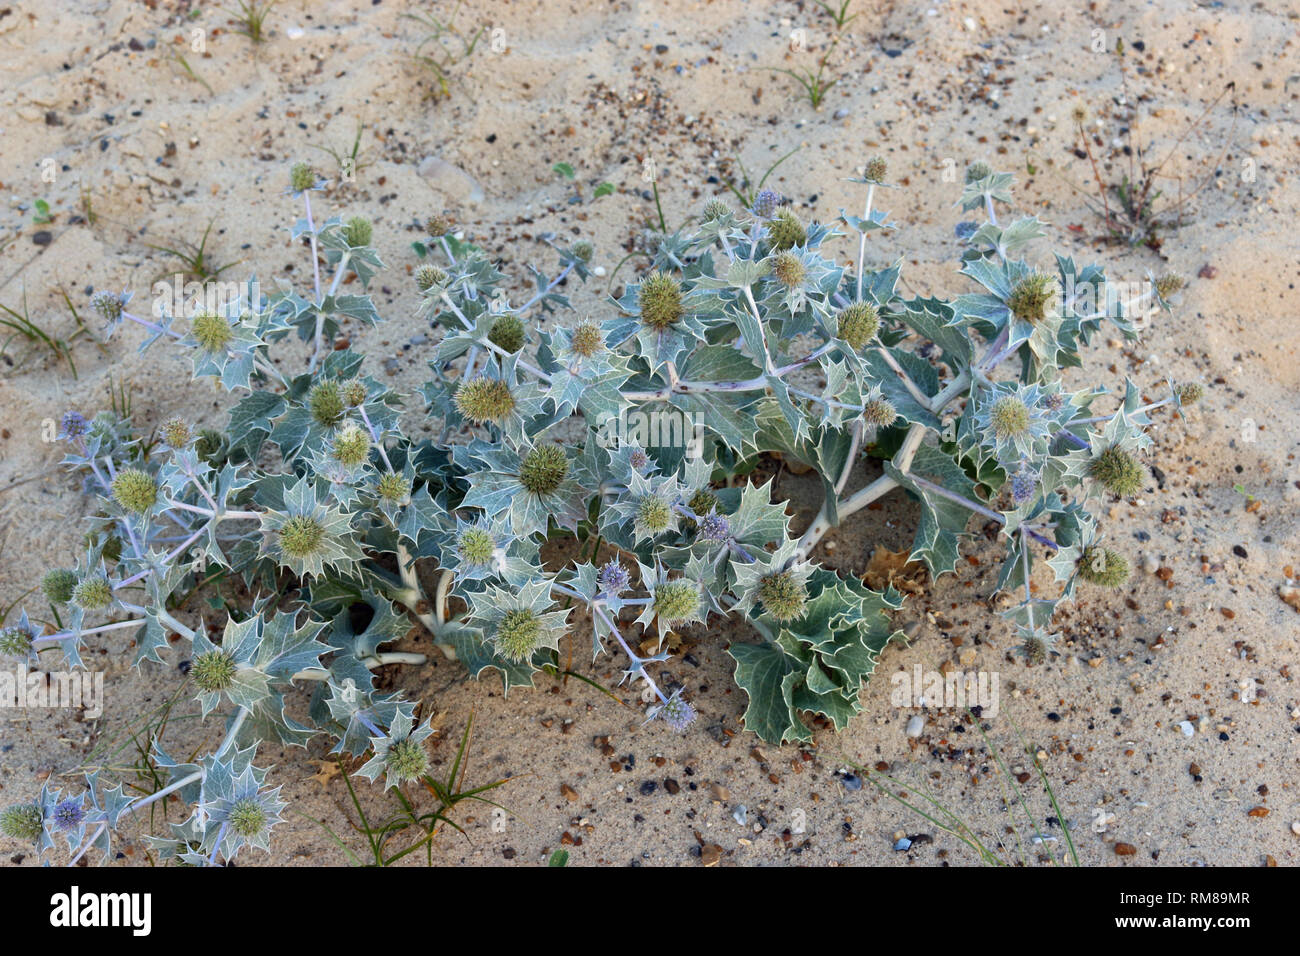 Native UK Sea Holly, Eryngium maritimum, blühen und wachsen auf einer Düne mit Gras und Sand im Hintergrund. Stockfoto